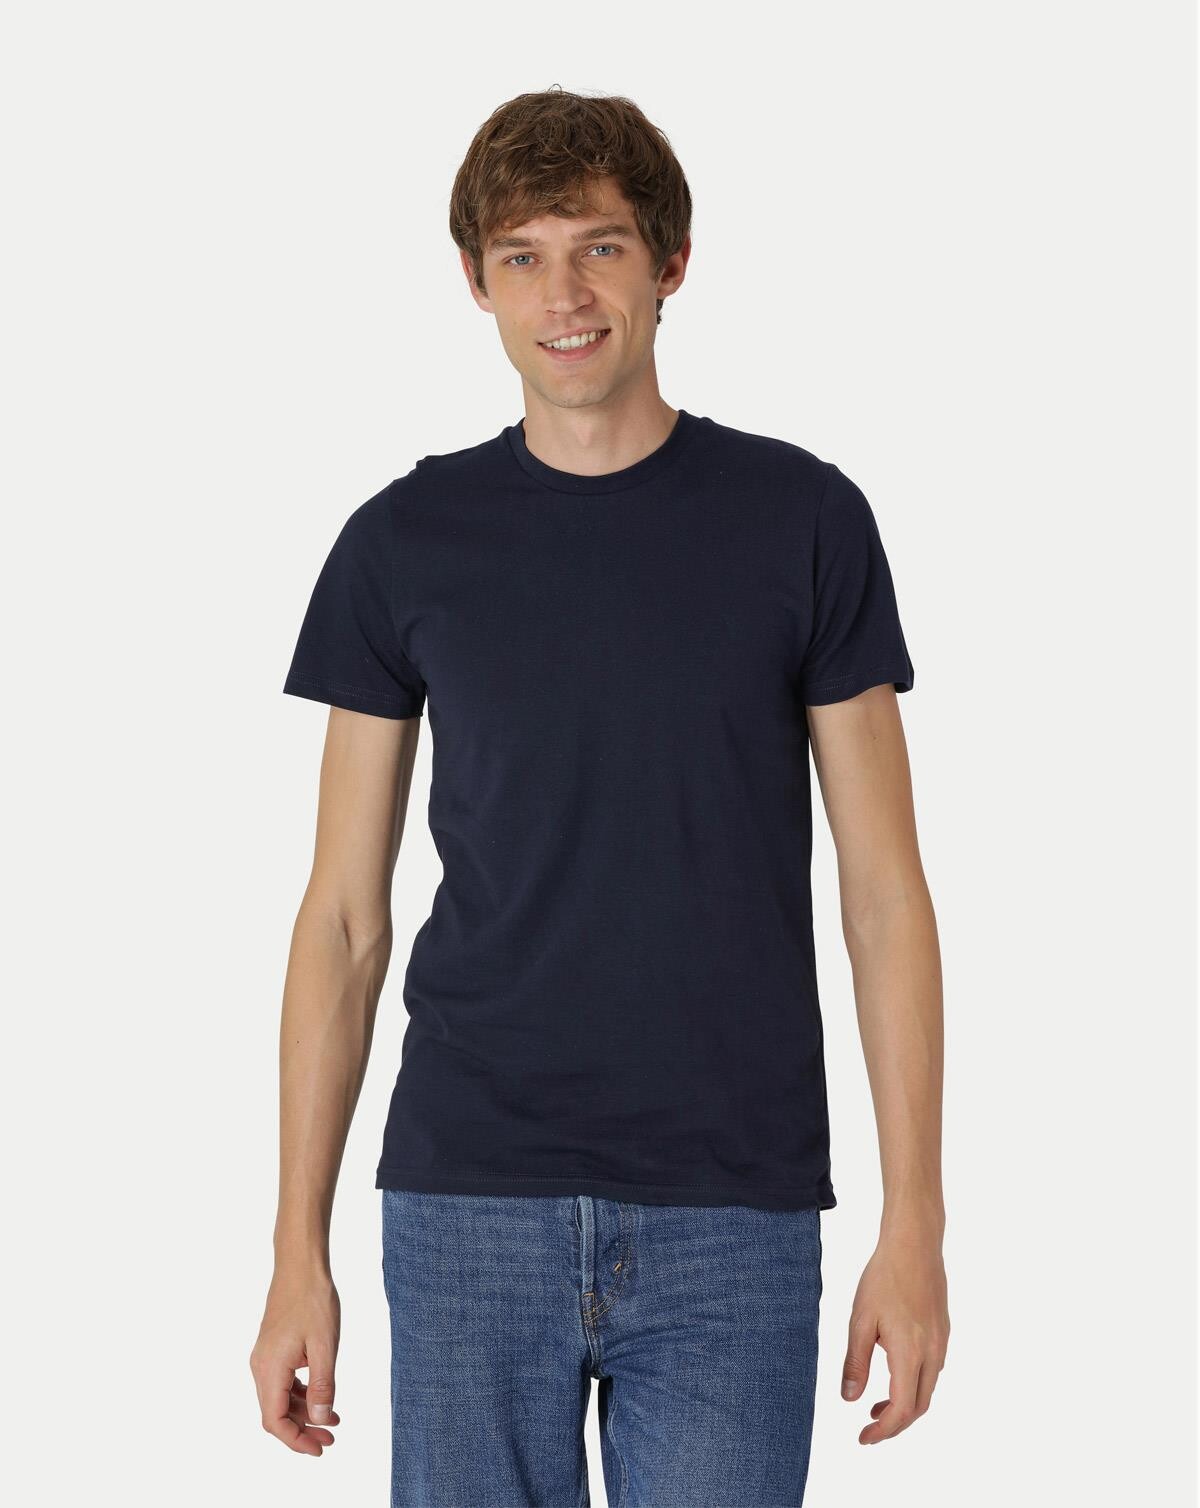 Neutral Økologisk T-shirt til - Tætsiddende (Navy, L)